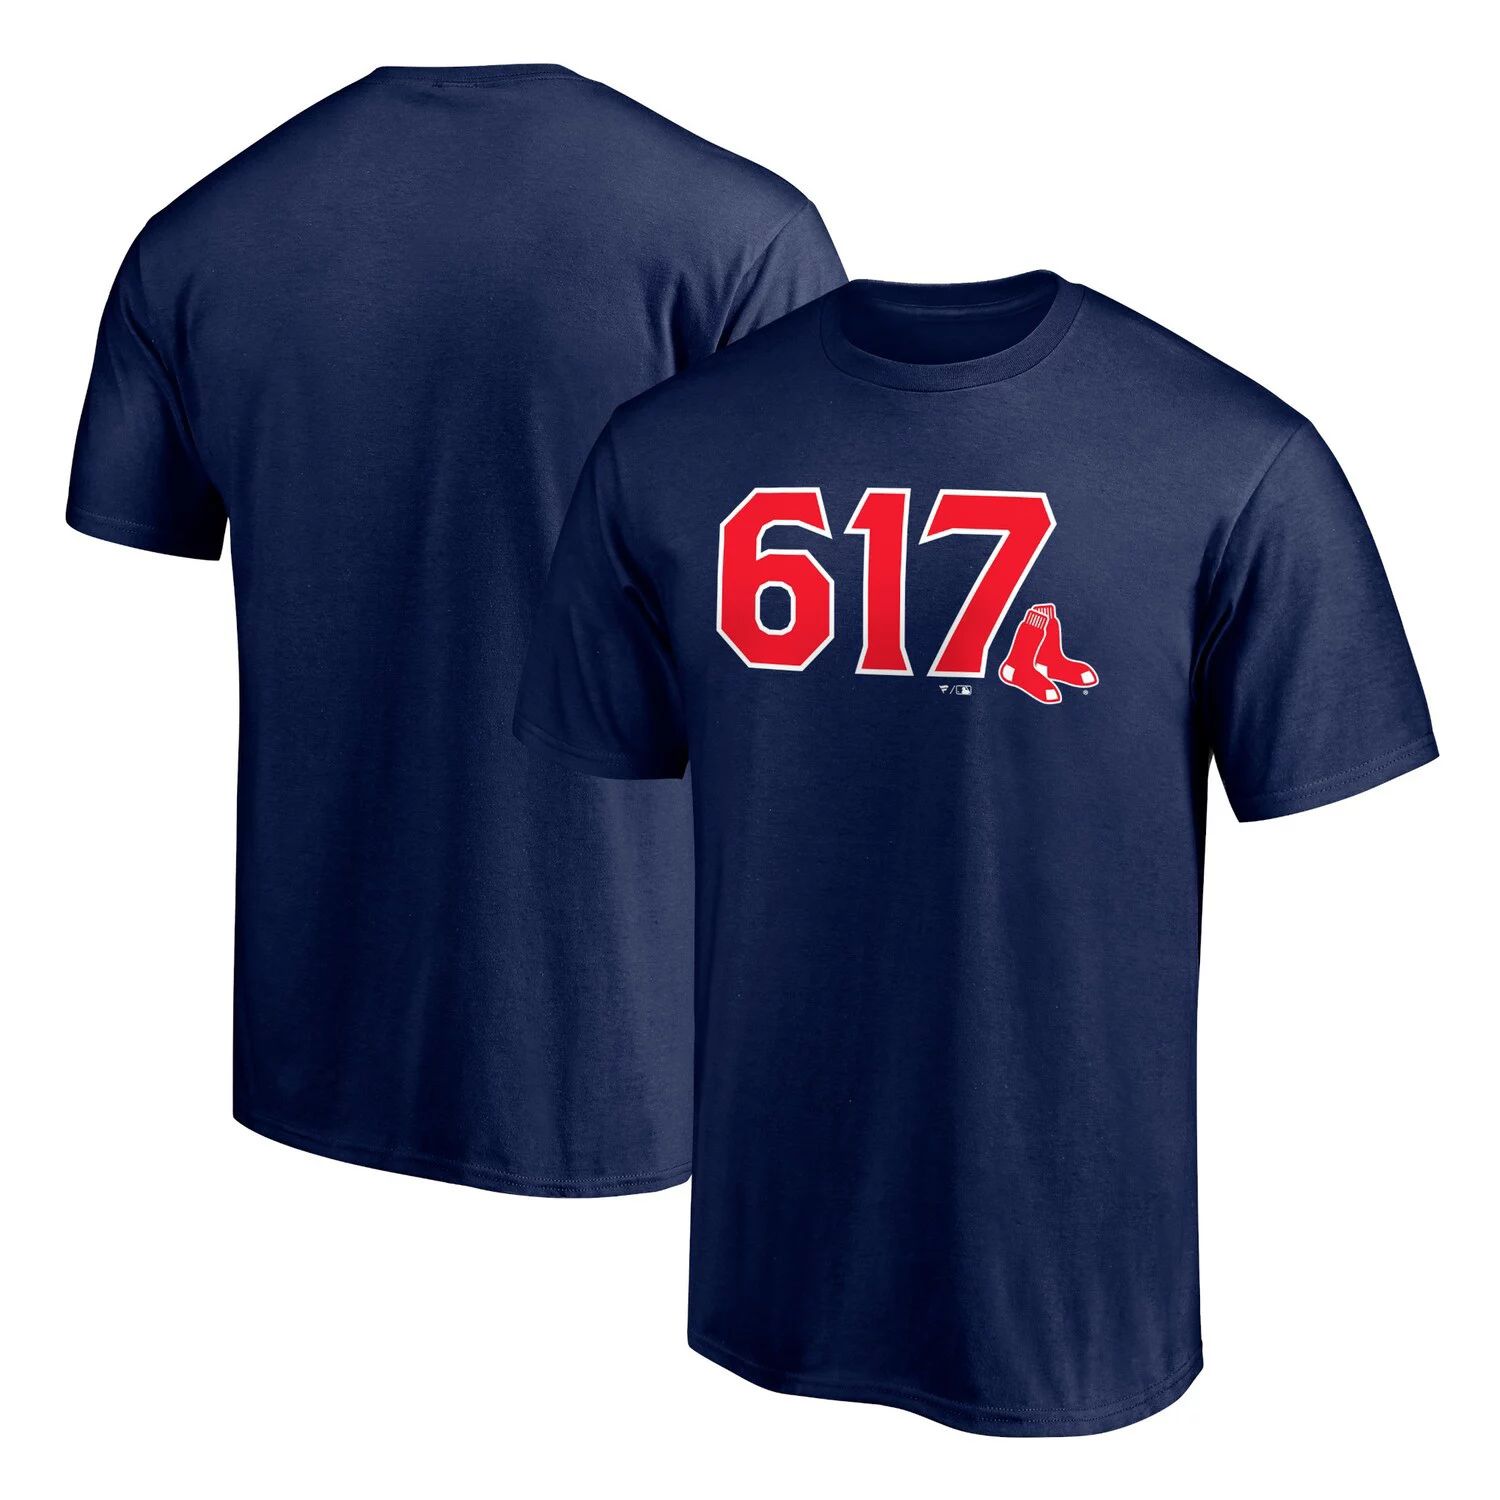 Мужская темно-синяя футболка с логотипом Boston Red Sox Hometown 617 Fanatics